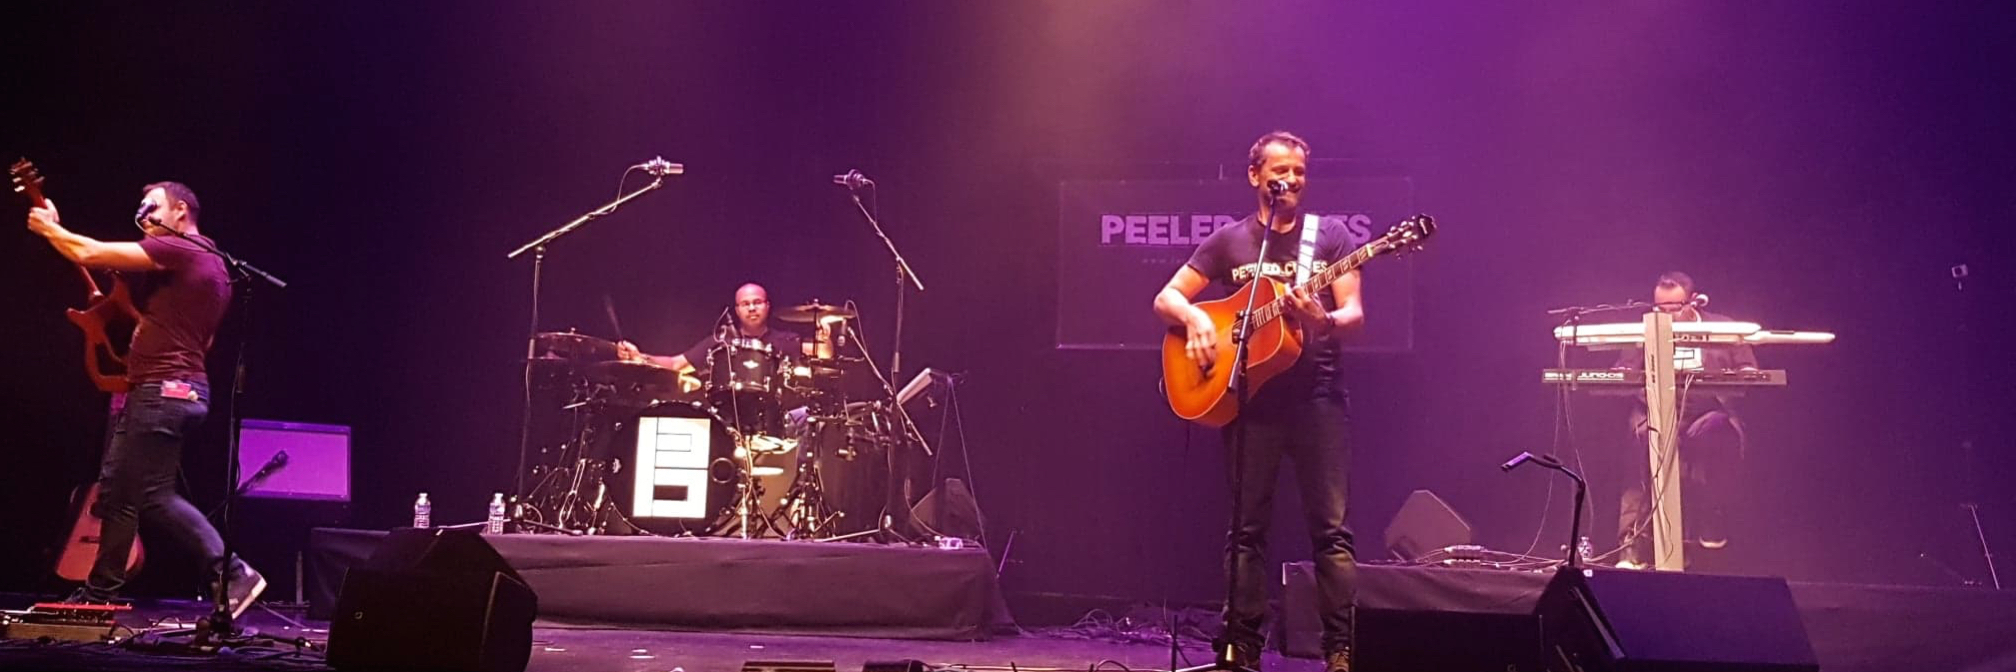 PEELED CUBES, groupe de musique Acoustique en représentation à Haut Rhin - photo de couverture n° 1